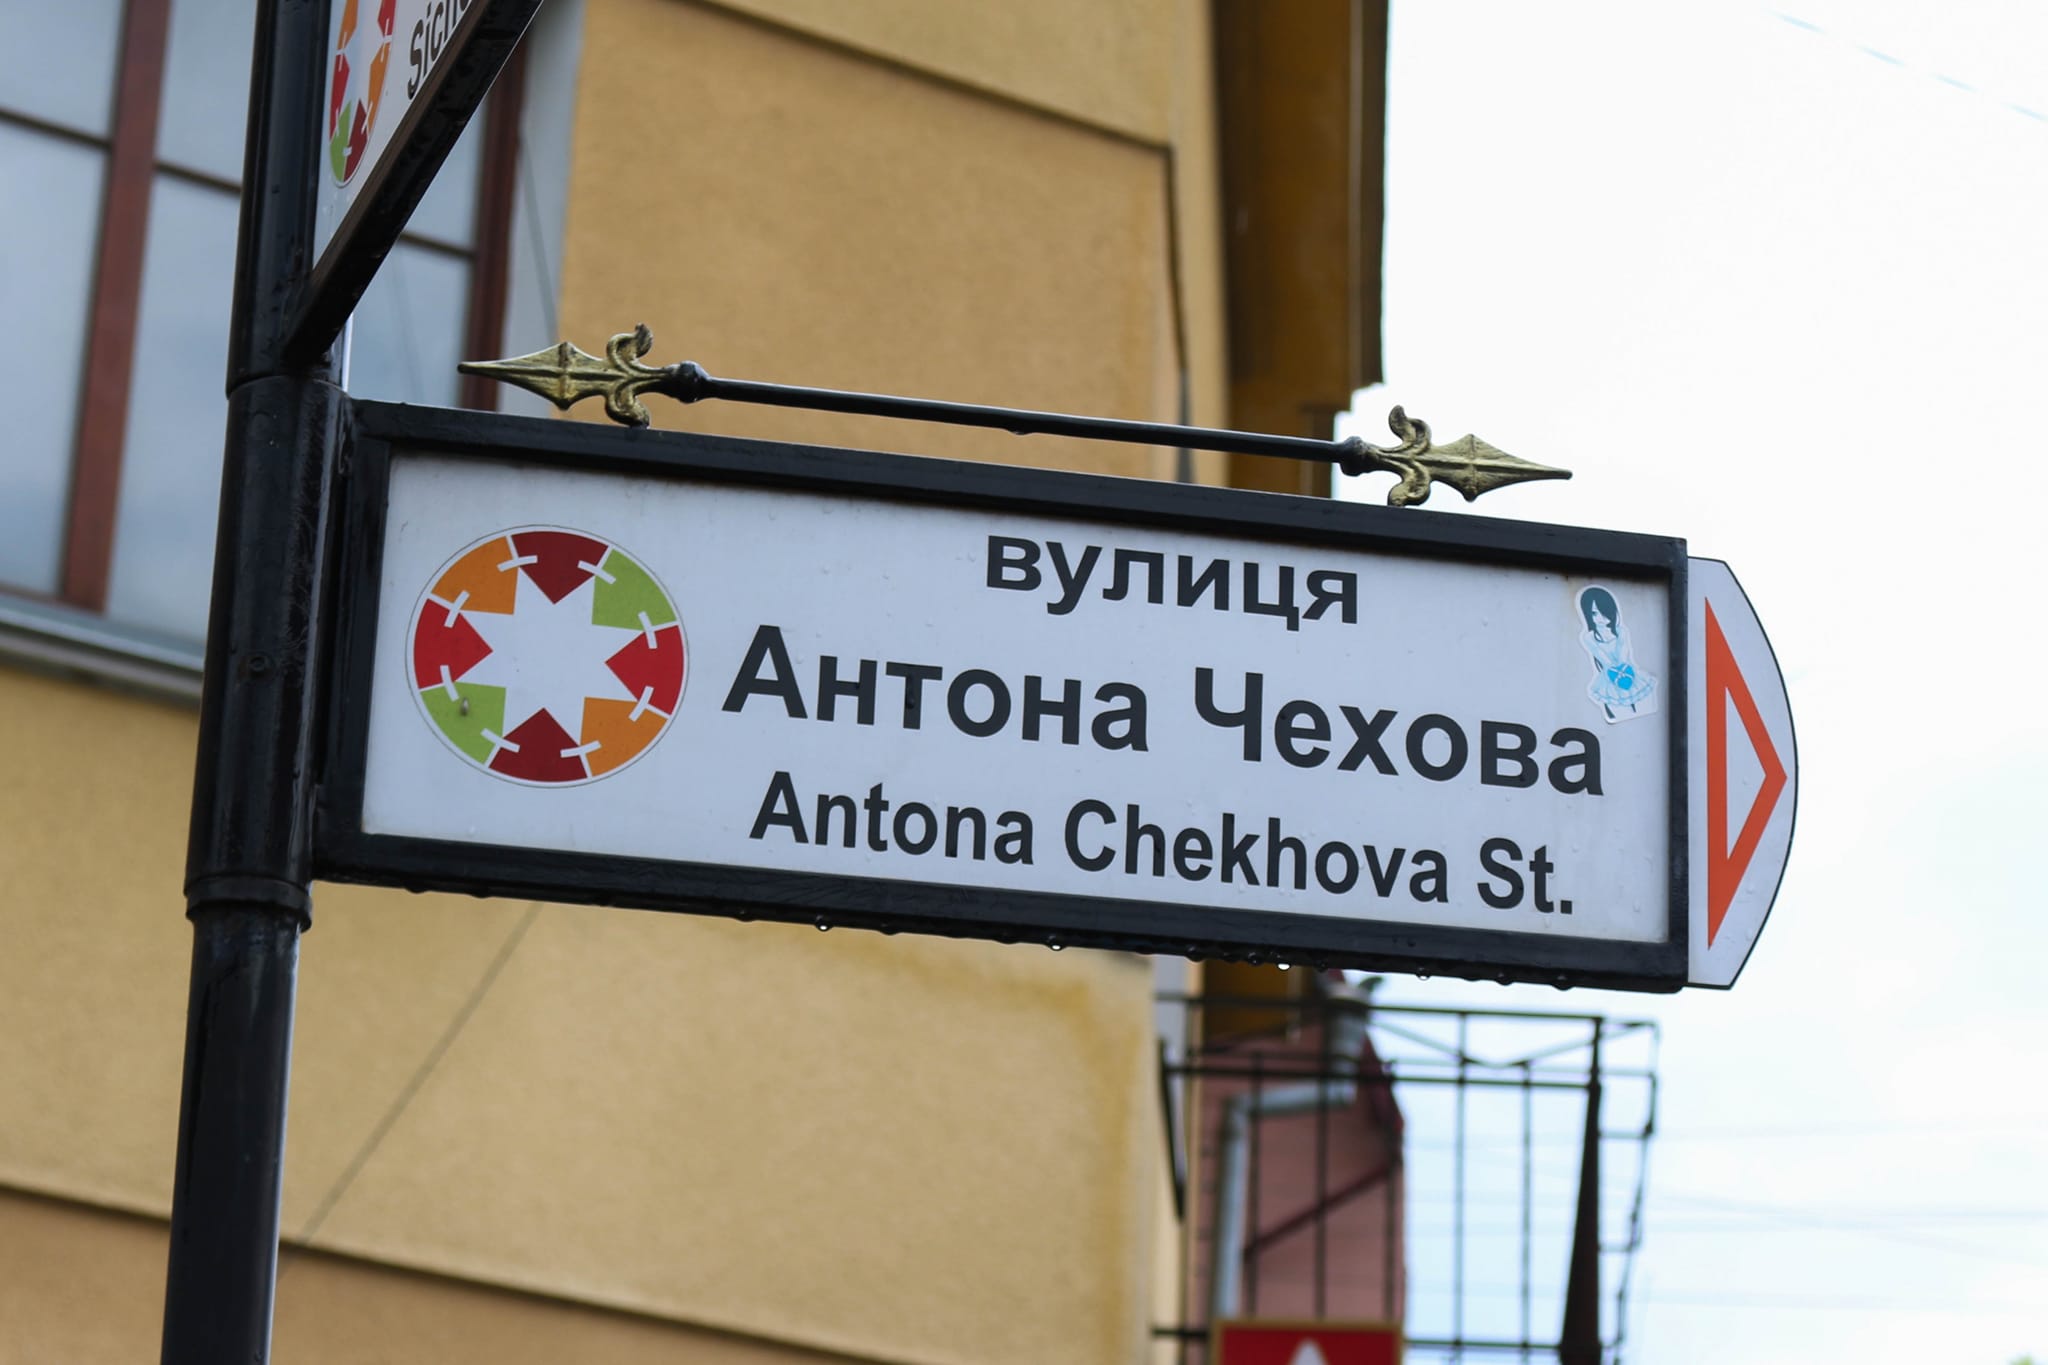 Коломияни можуть запропонувати нові назви для вулиць громади  — Станіславський